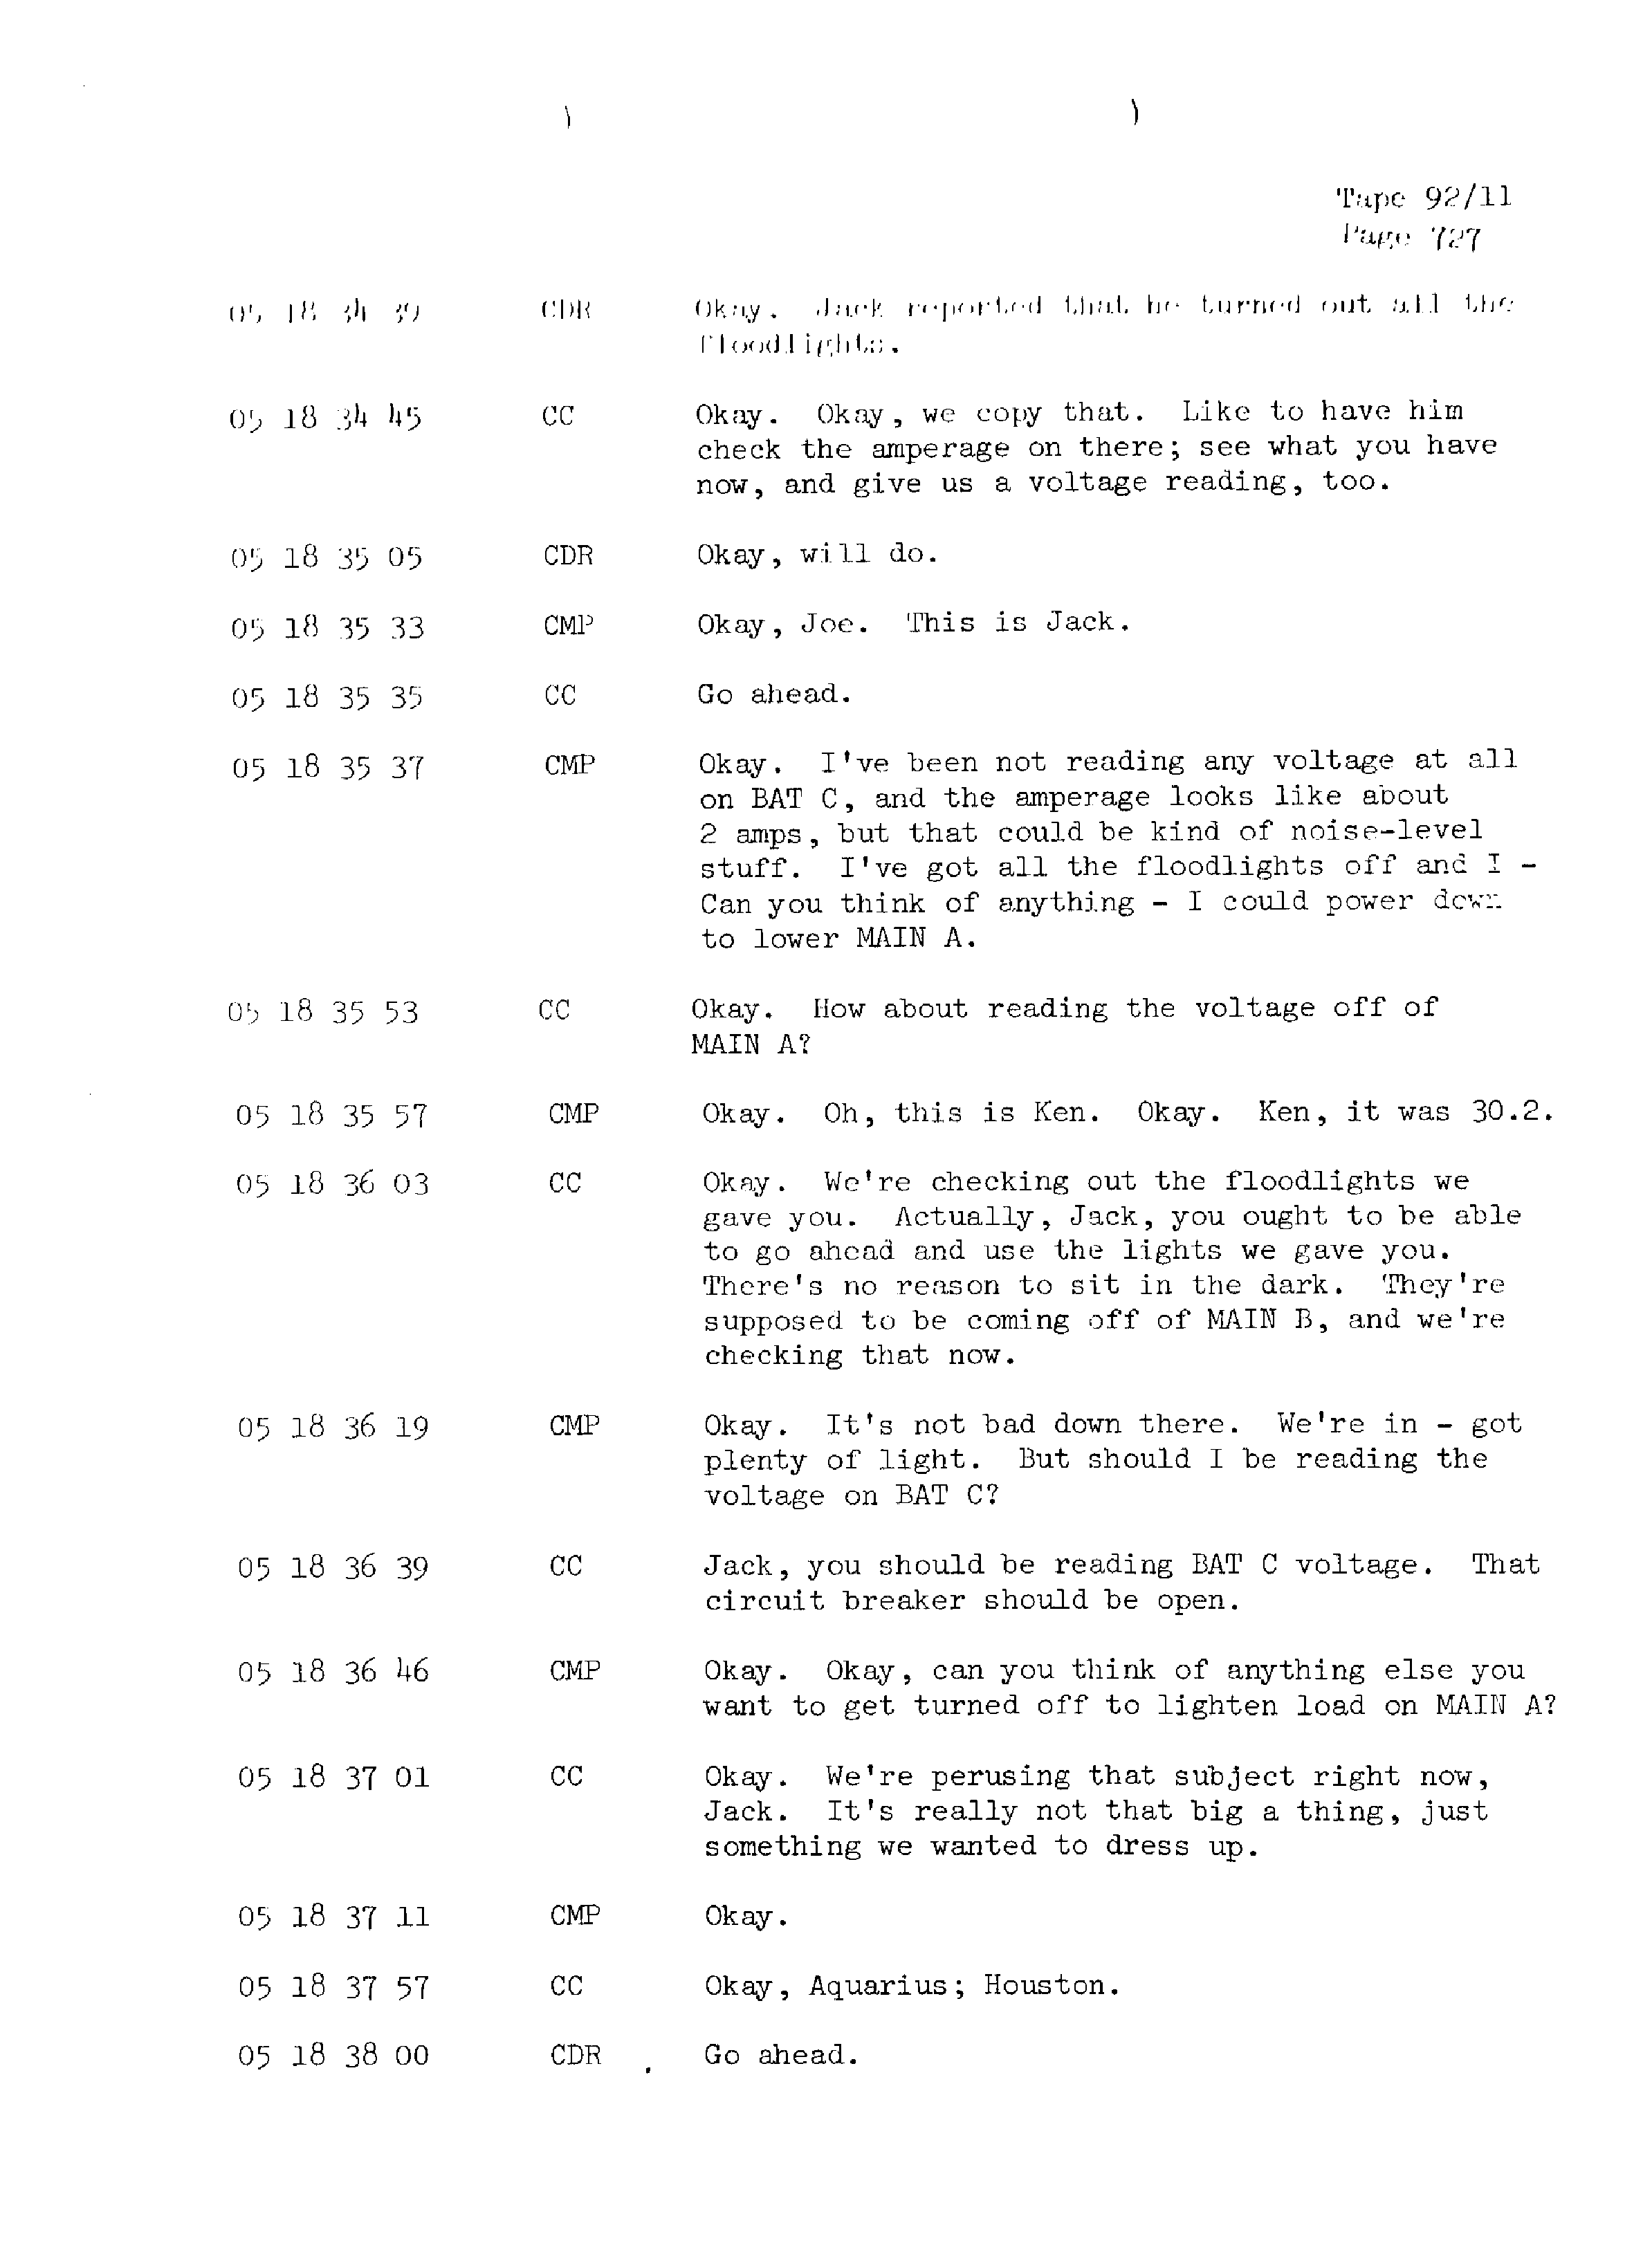 Page 734 of Apollo 13’s original transcript